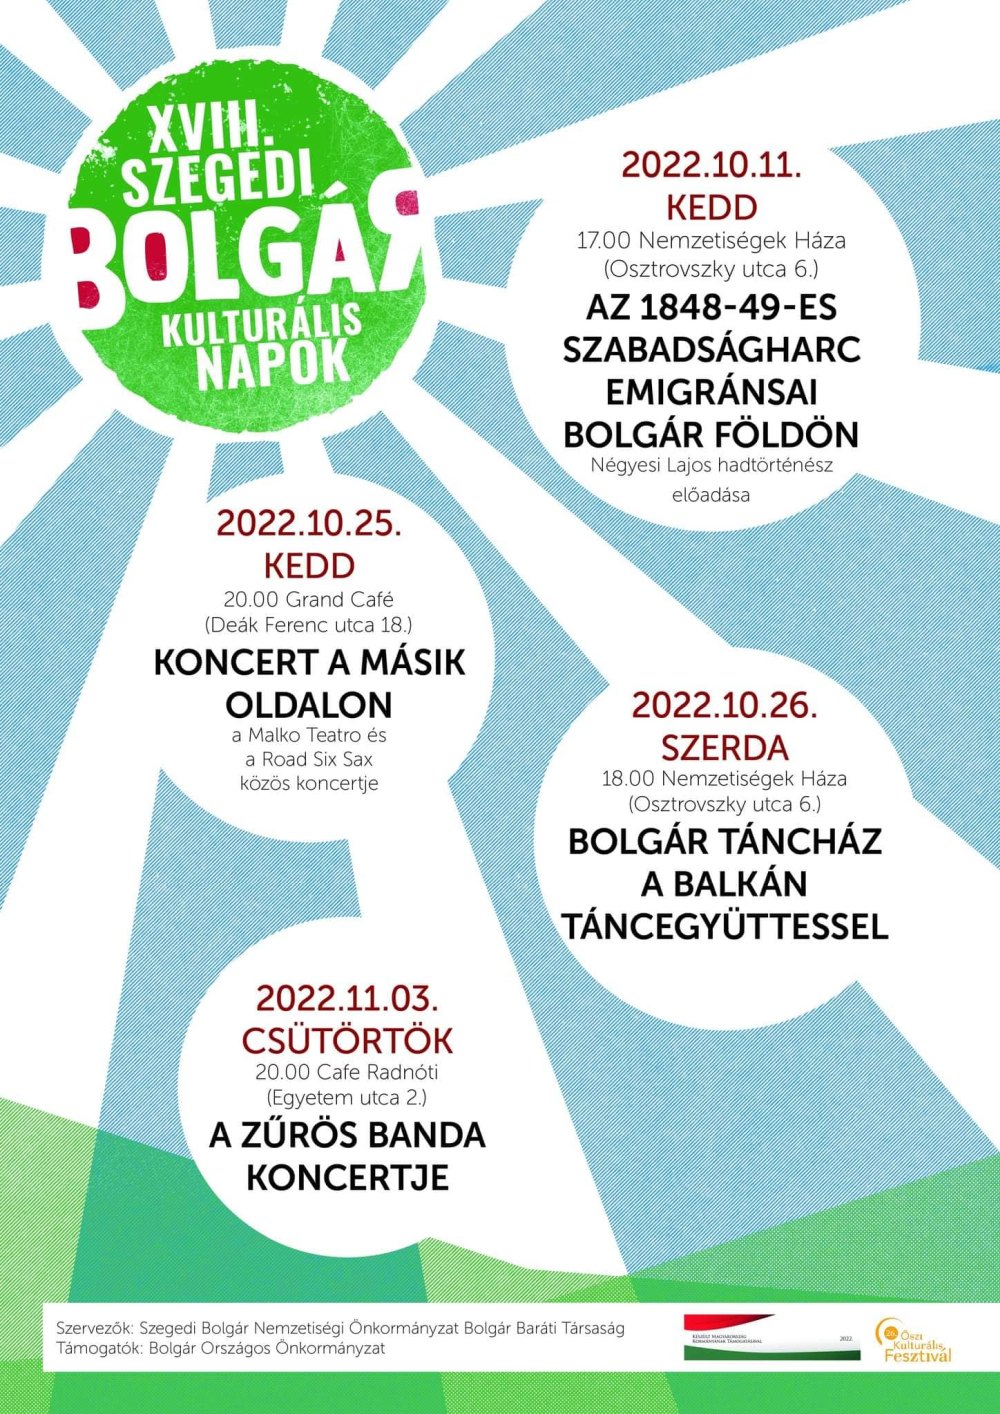  Szegedi Bolgár Kulturális Napok - 2022